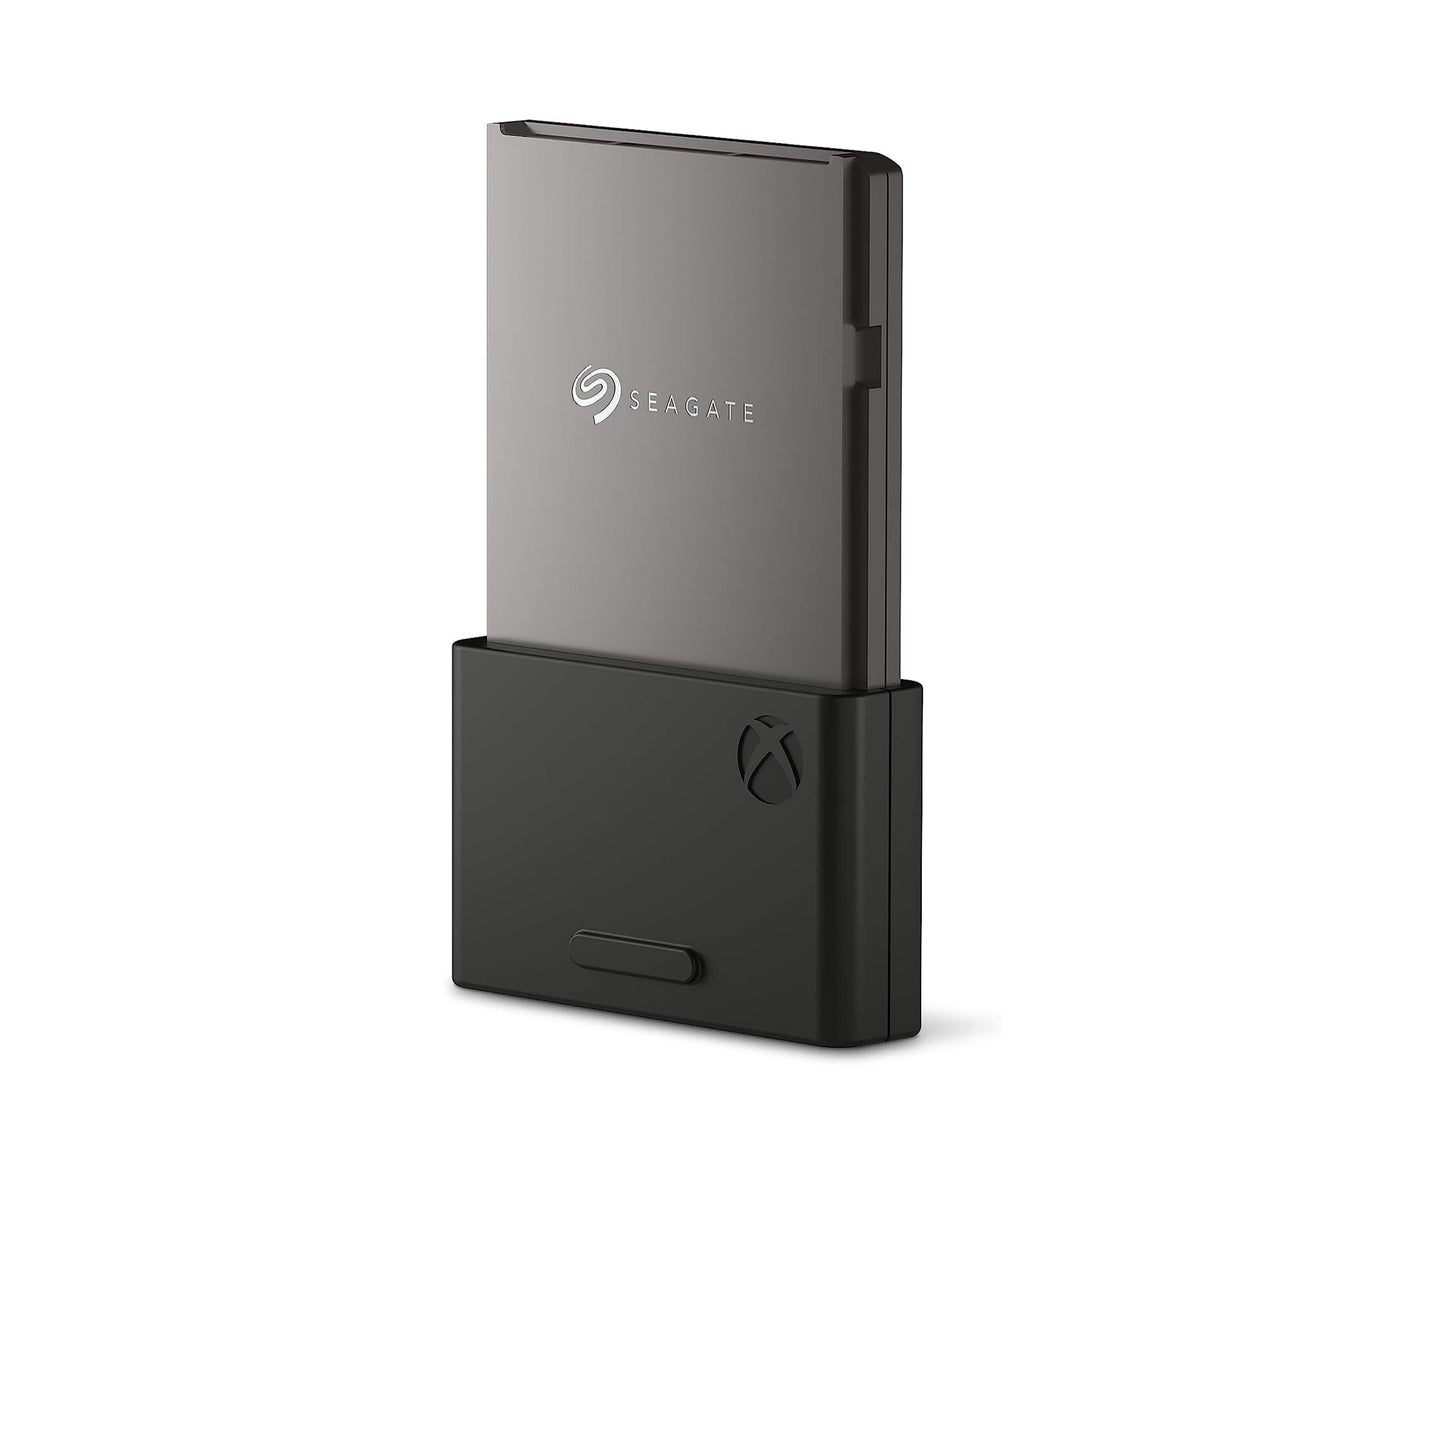 بطاقة توسيع التخزين Seagate لمحرك الأقراص الصلبة Xbox Series XS سعة 1 تيرابايت - NVMe Expansion SSD، استئناف سريع، التوصيل والتشغيل، مرخص (STJR1000400) 